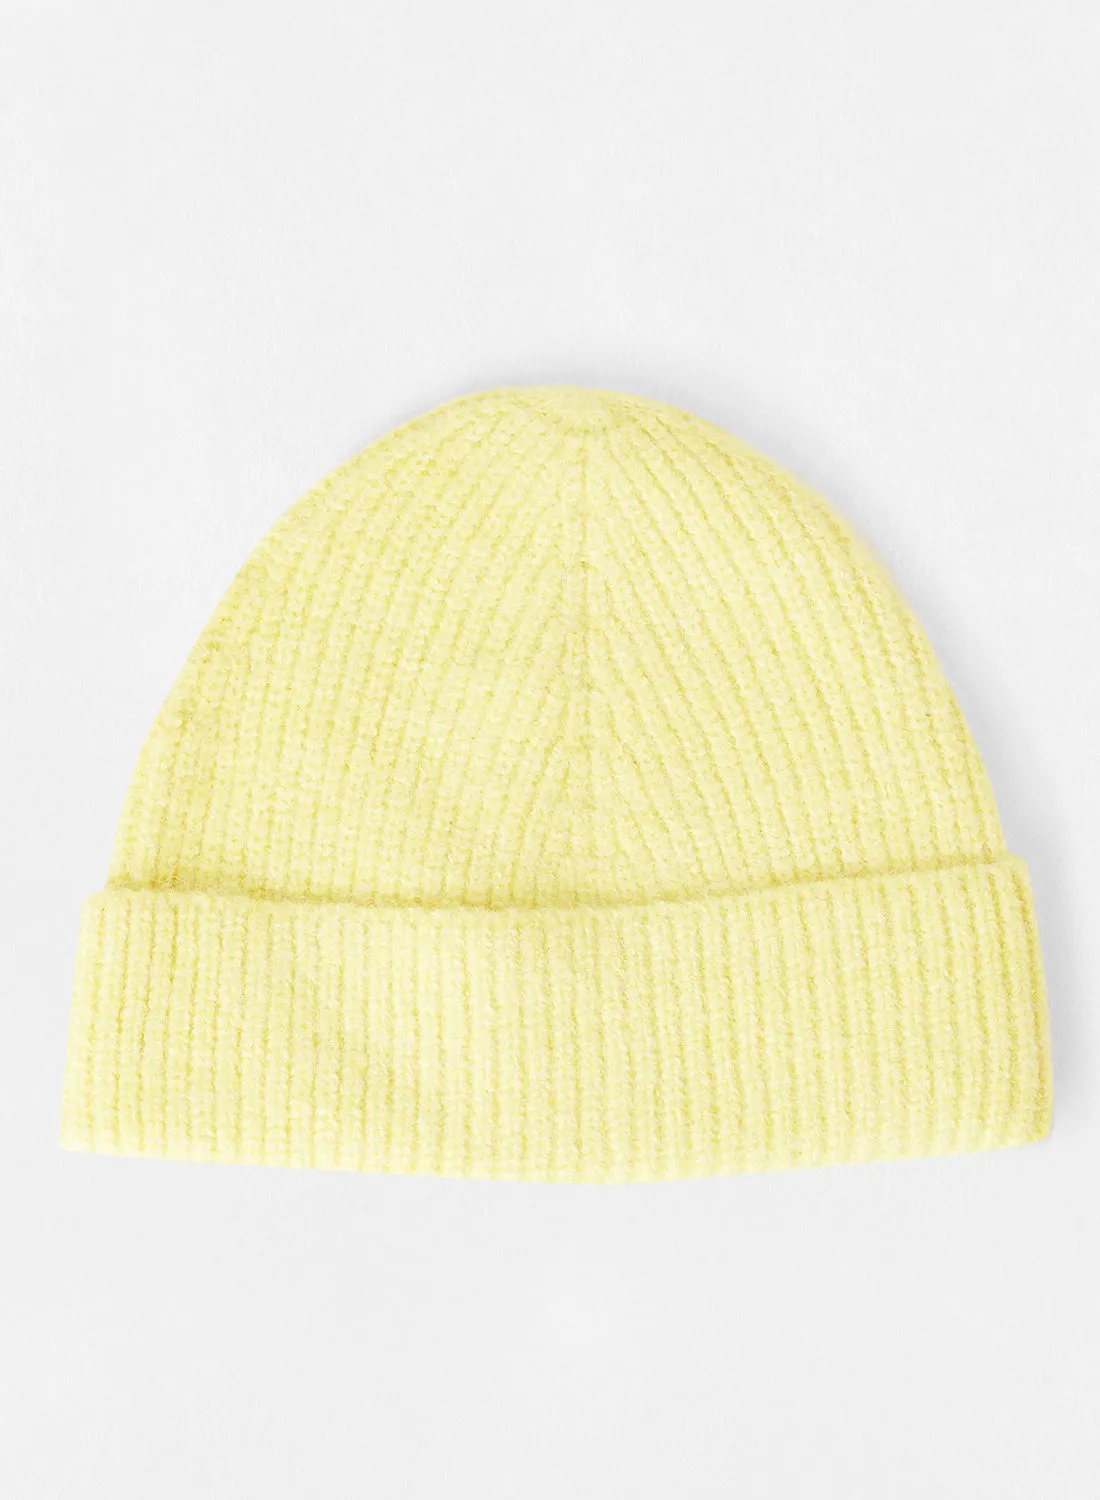 قبعة صغيرة محبوكة باللون الأصفر فقط